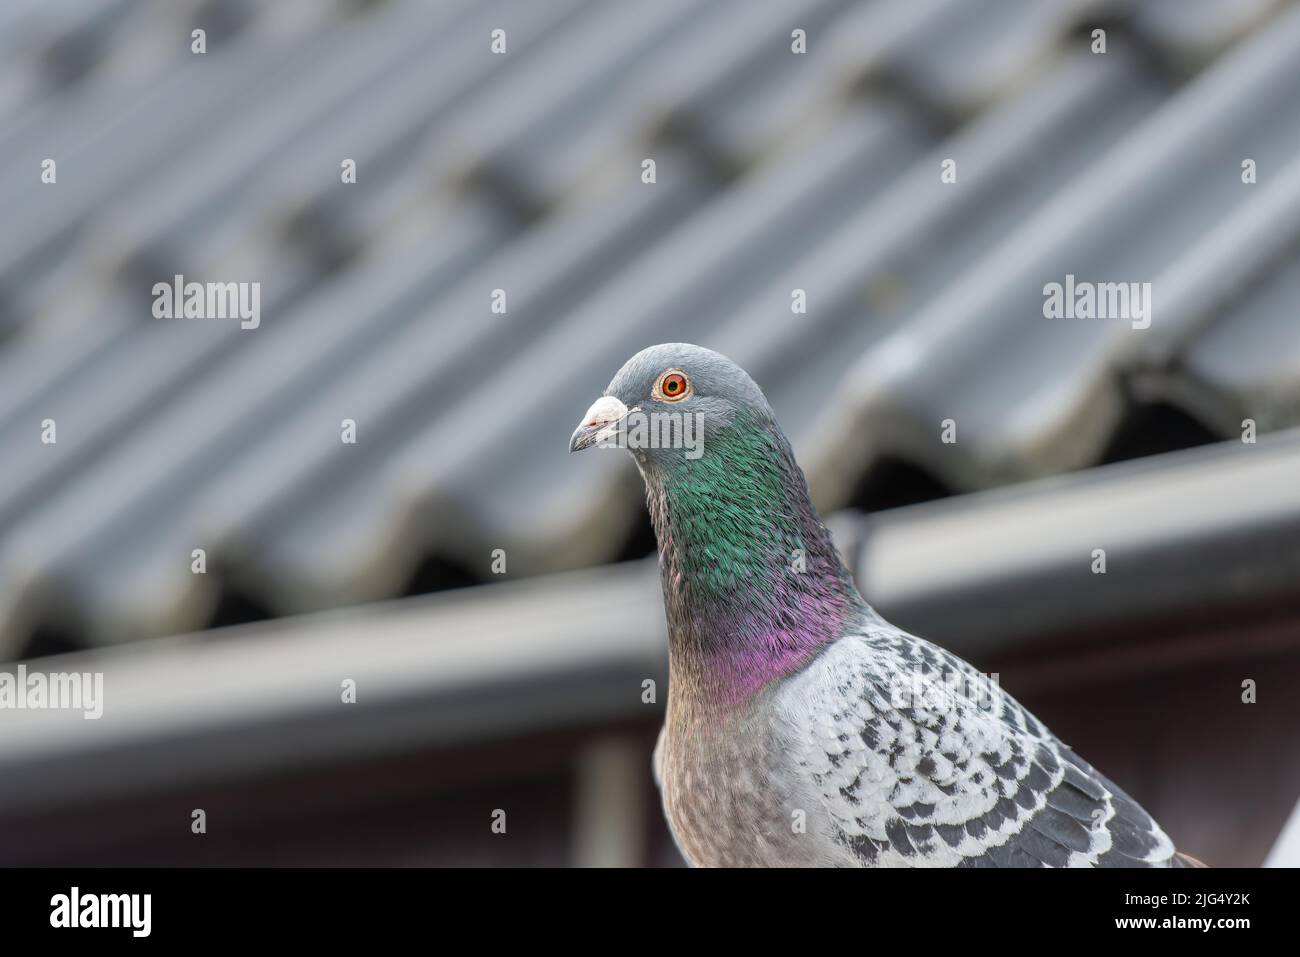 Retrato de una paloma de carreras o paloma posando delante de un techo Foto de stock